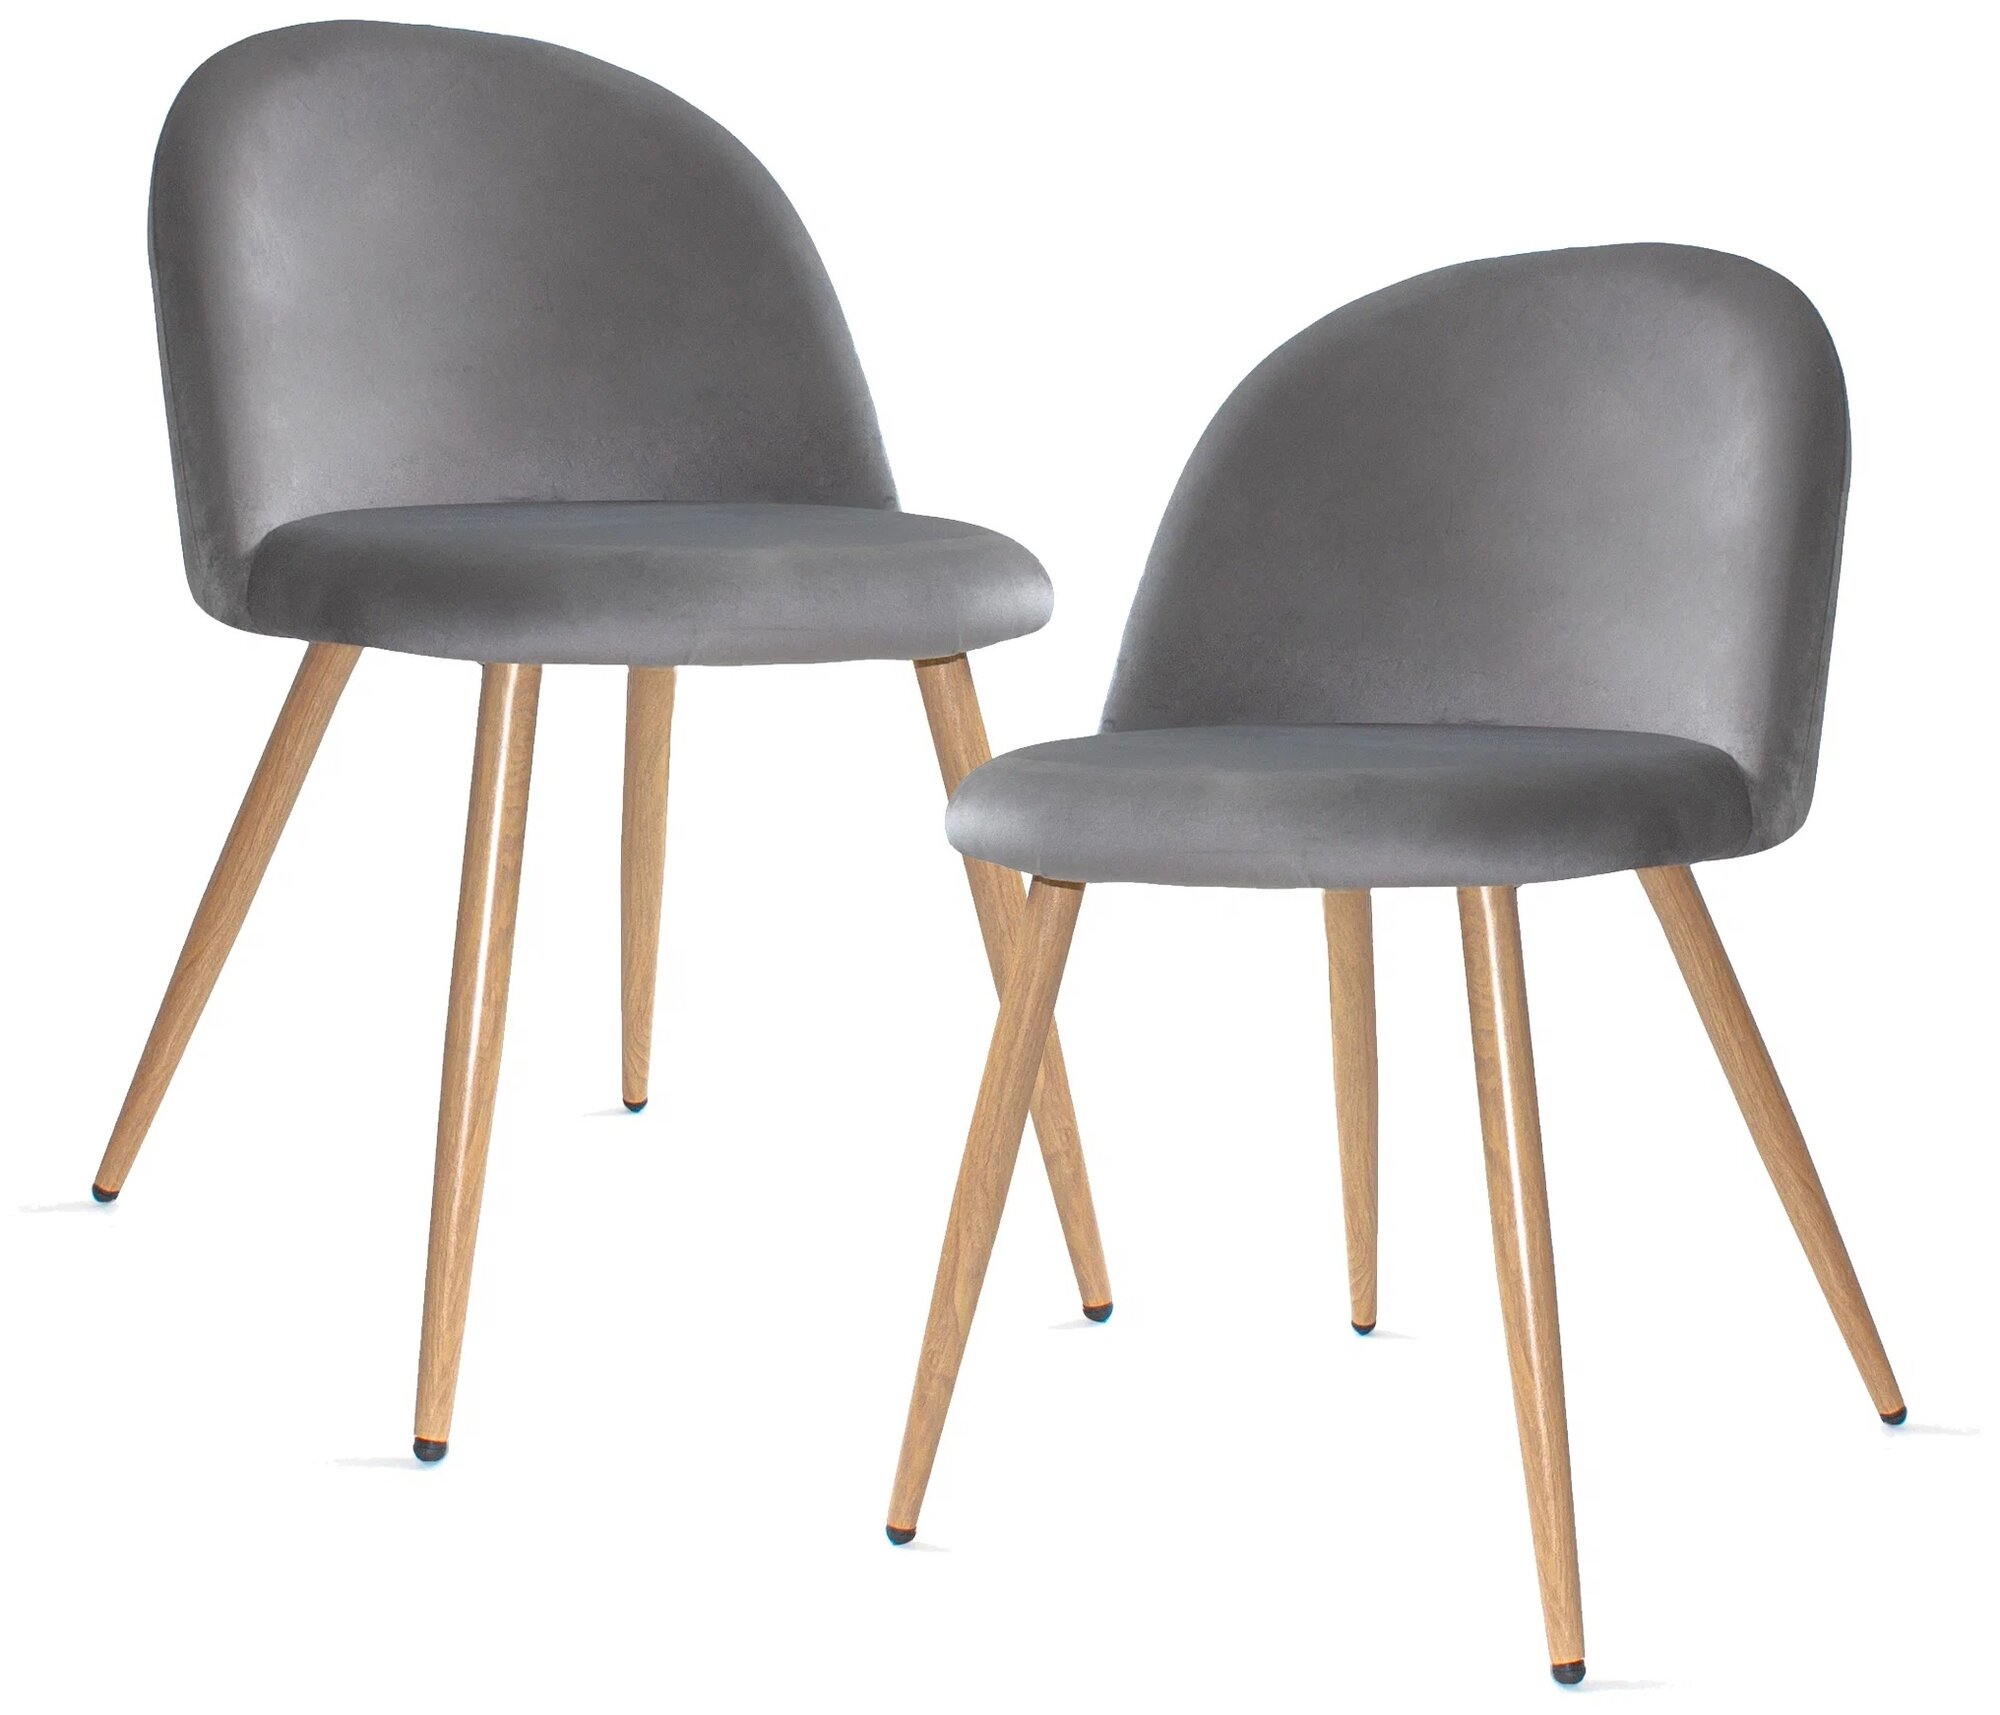 Комплект стульев для кухни Юпитер, текстиль, цвет: dark grey/бежевый 2 шт.